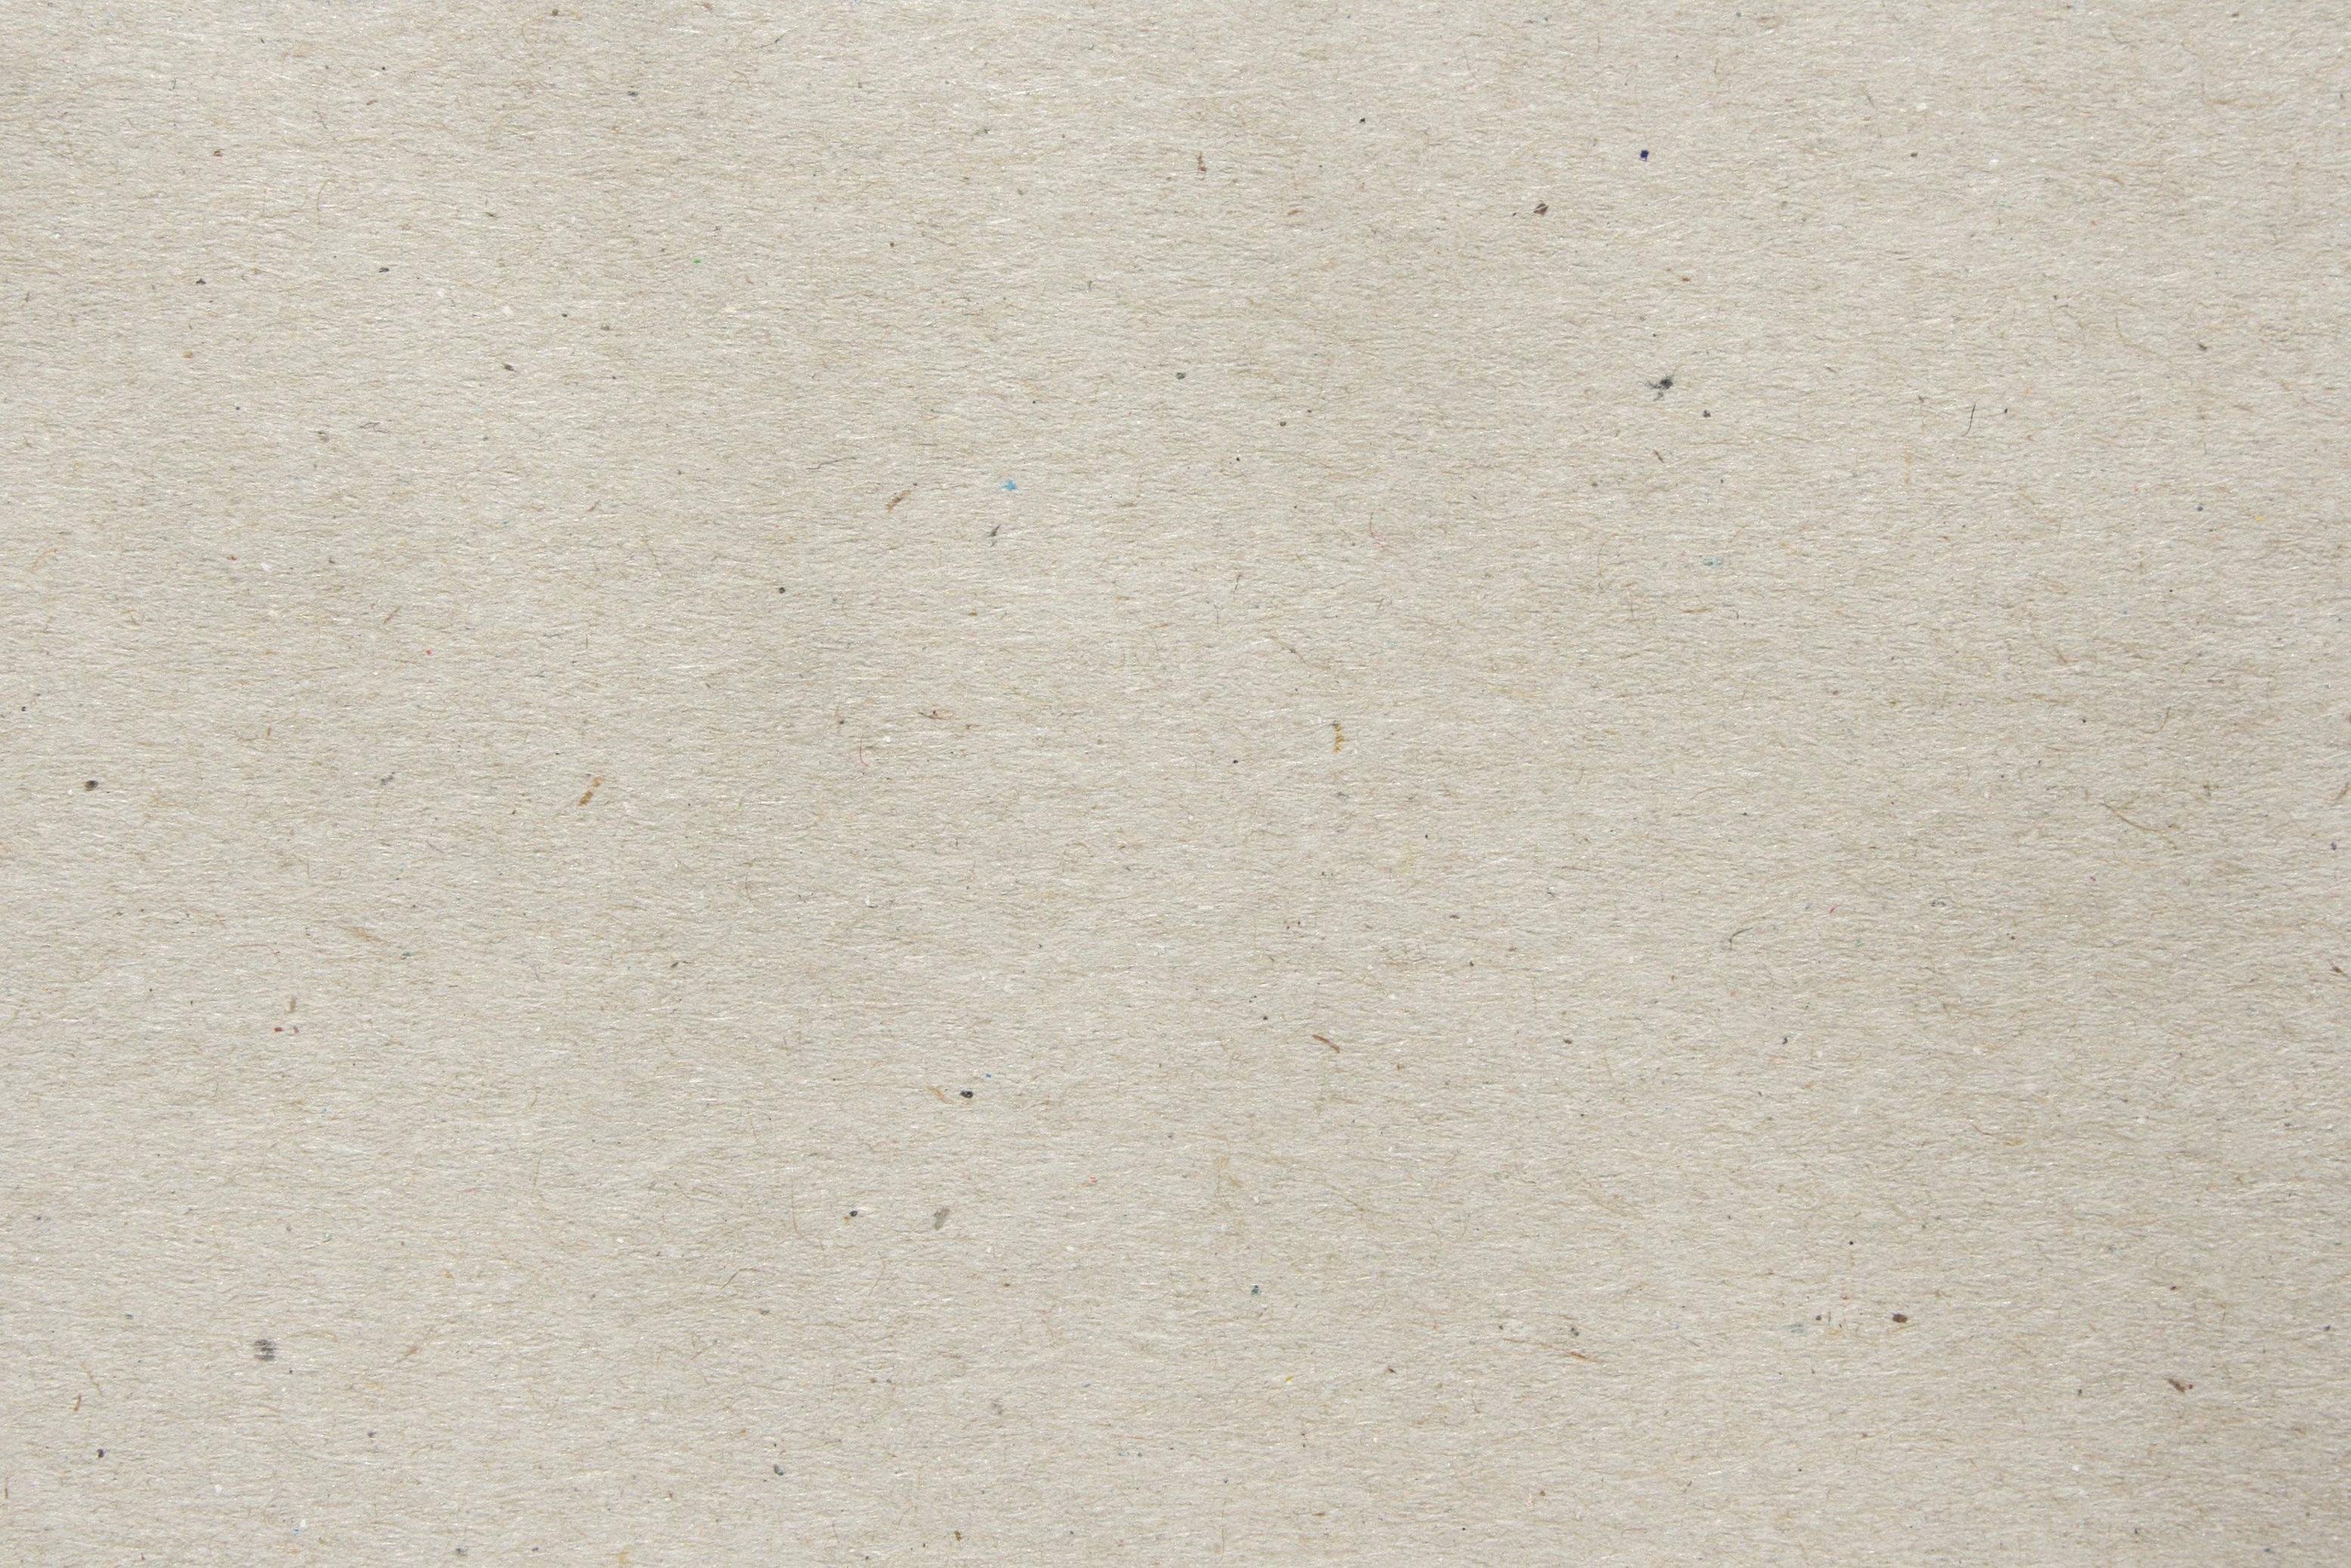 Parchment Paper Texture Picture, Free Photograph